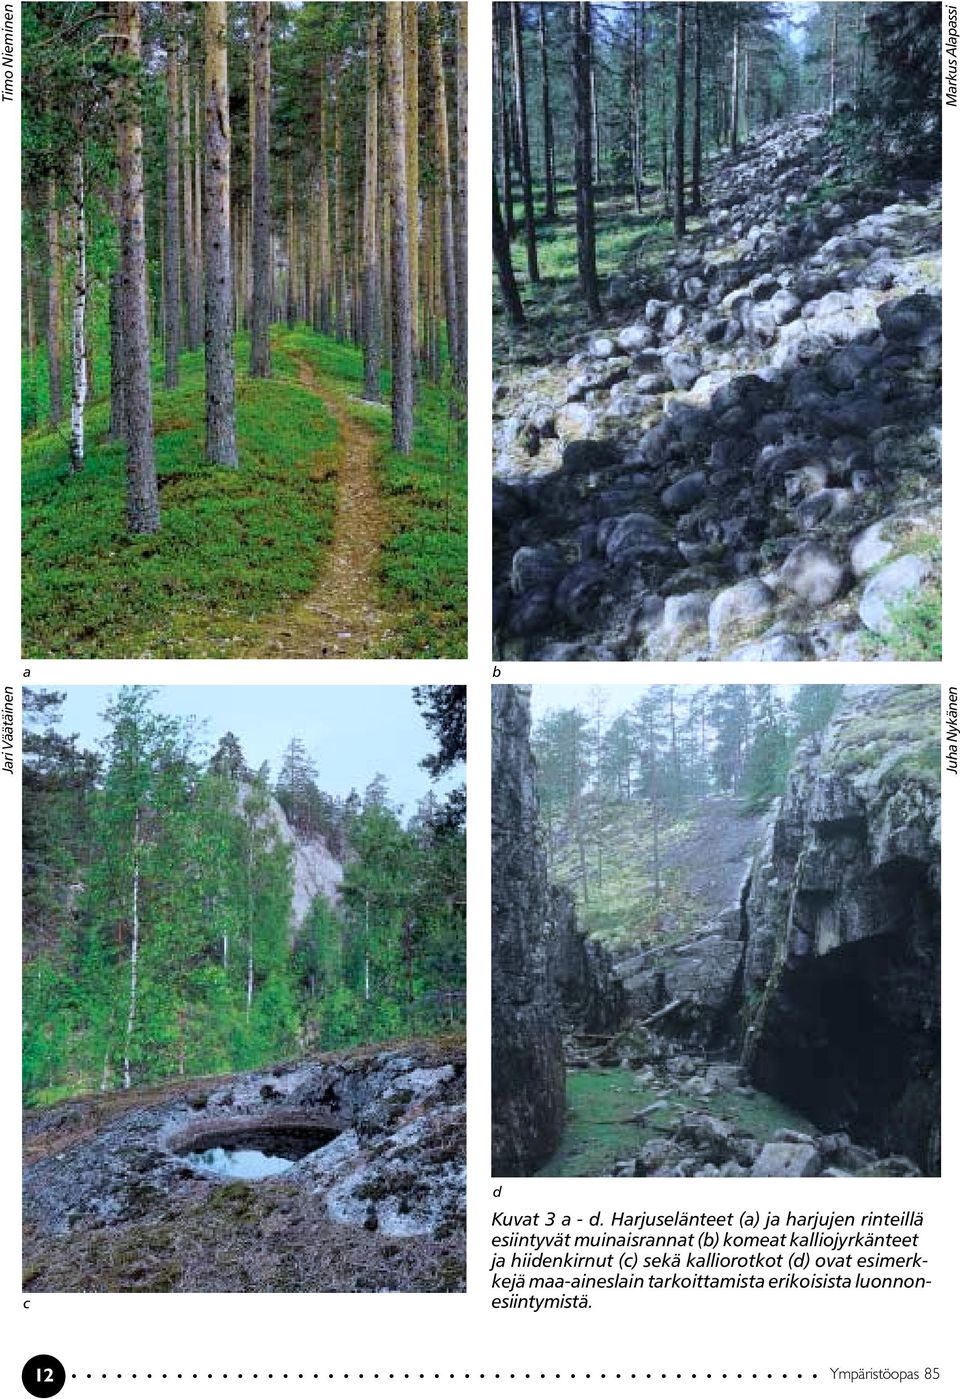 kalliojyrkänteet ja hiidenkirnut (c) sekä kalliorotkot (d) ovat esimerkkejä